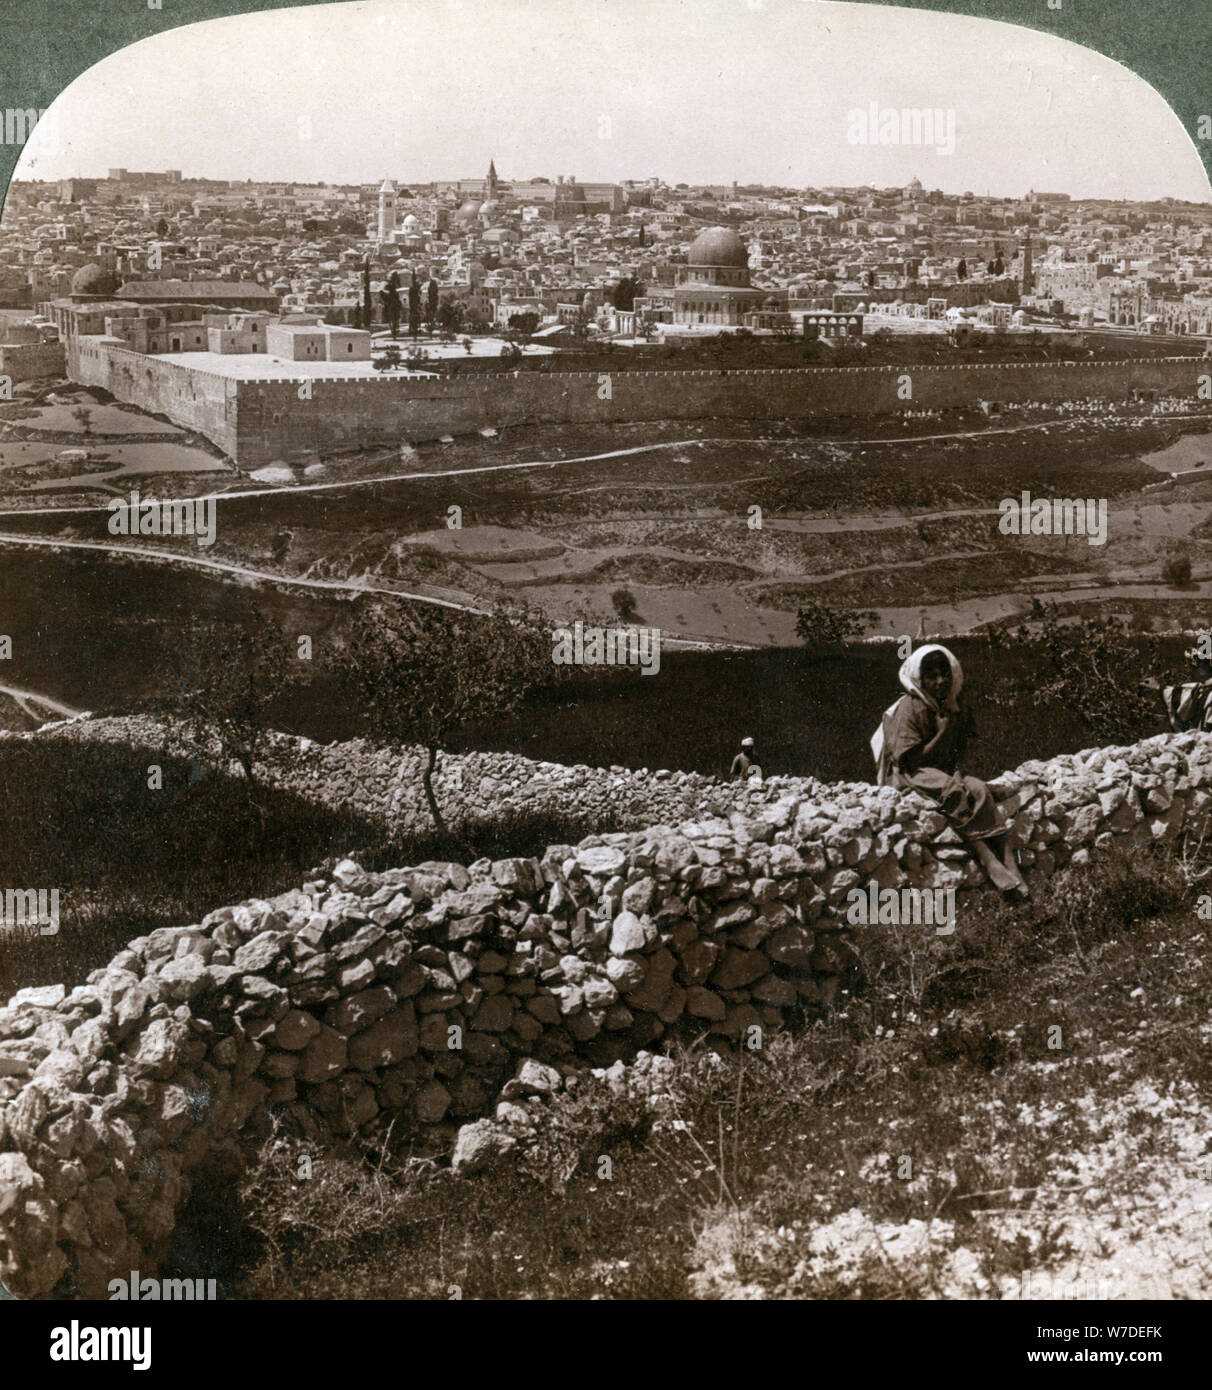 Gerusalemme, come visto da sud-est, che mostra il sito del tempio, Palestina, 1900s.Artista: Underwood & Underwood Foto Stock